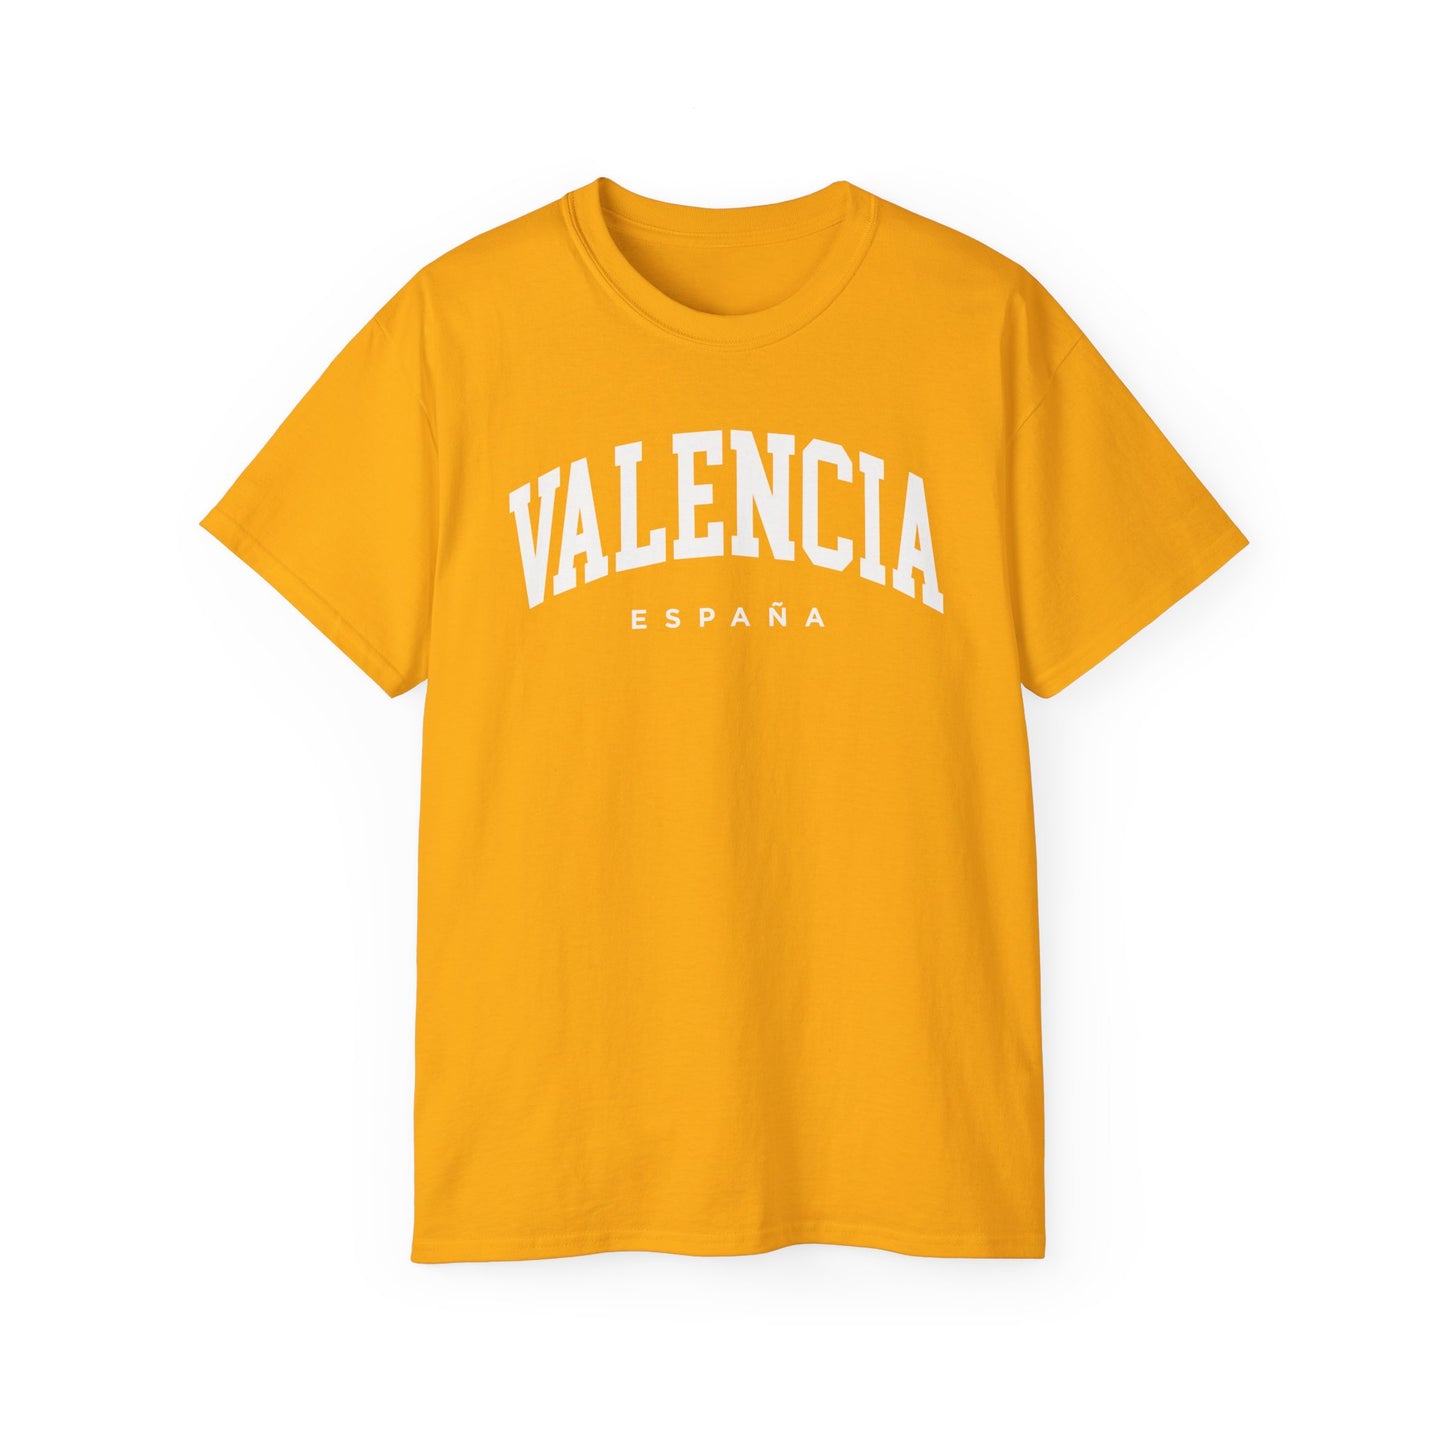 Valencia Spain Tee